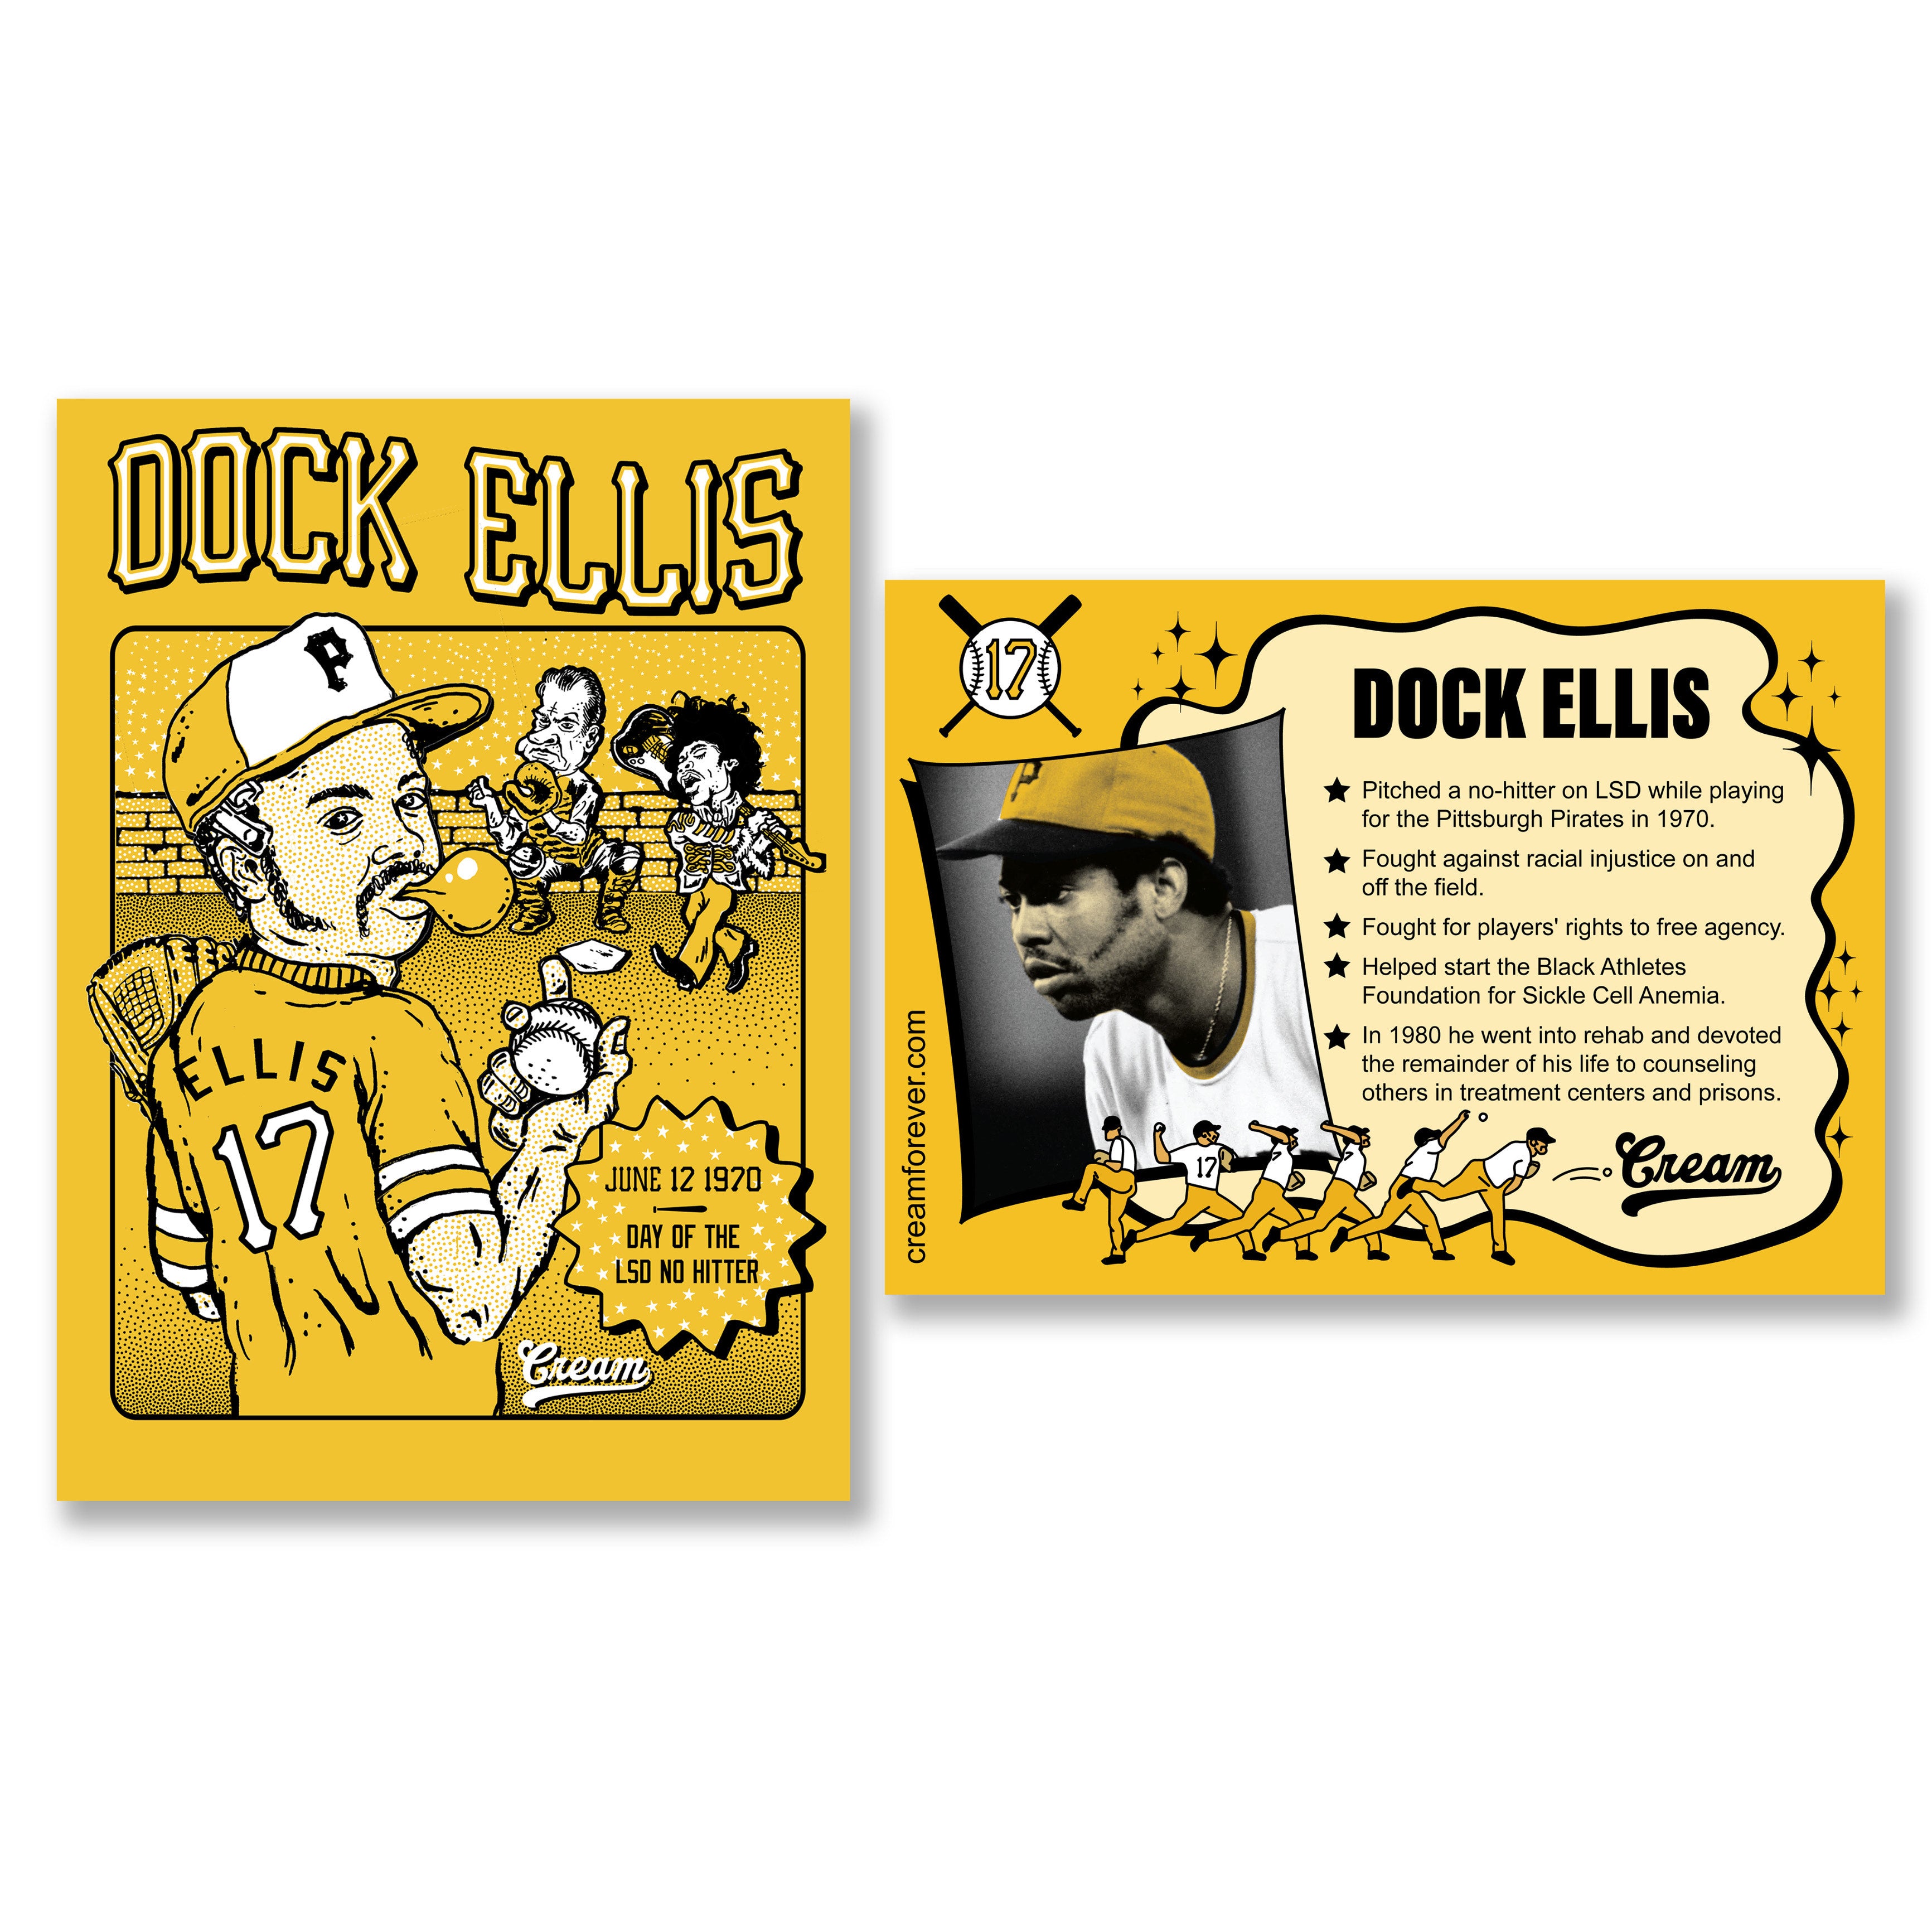 17 - Dock Ellis - Pirates - Pitcher  Pittsburgh pirates baseball, Pirates  baseball, Dock ellis